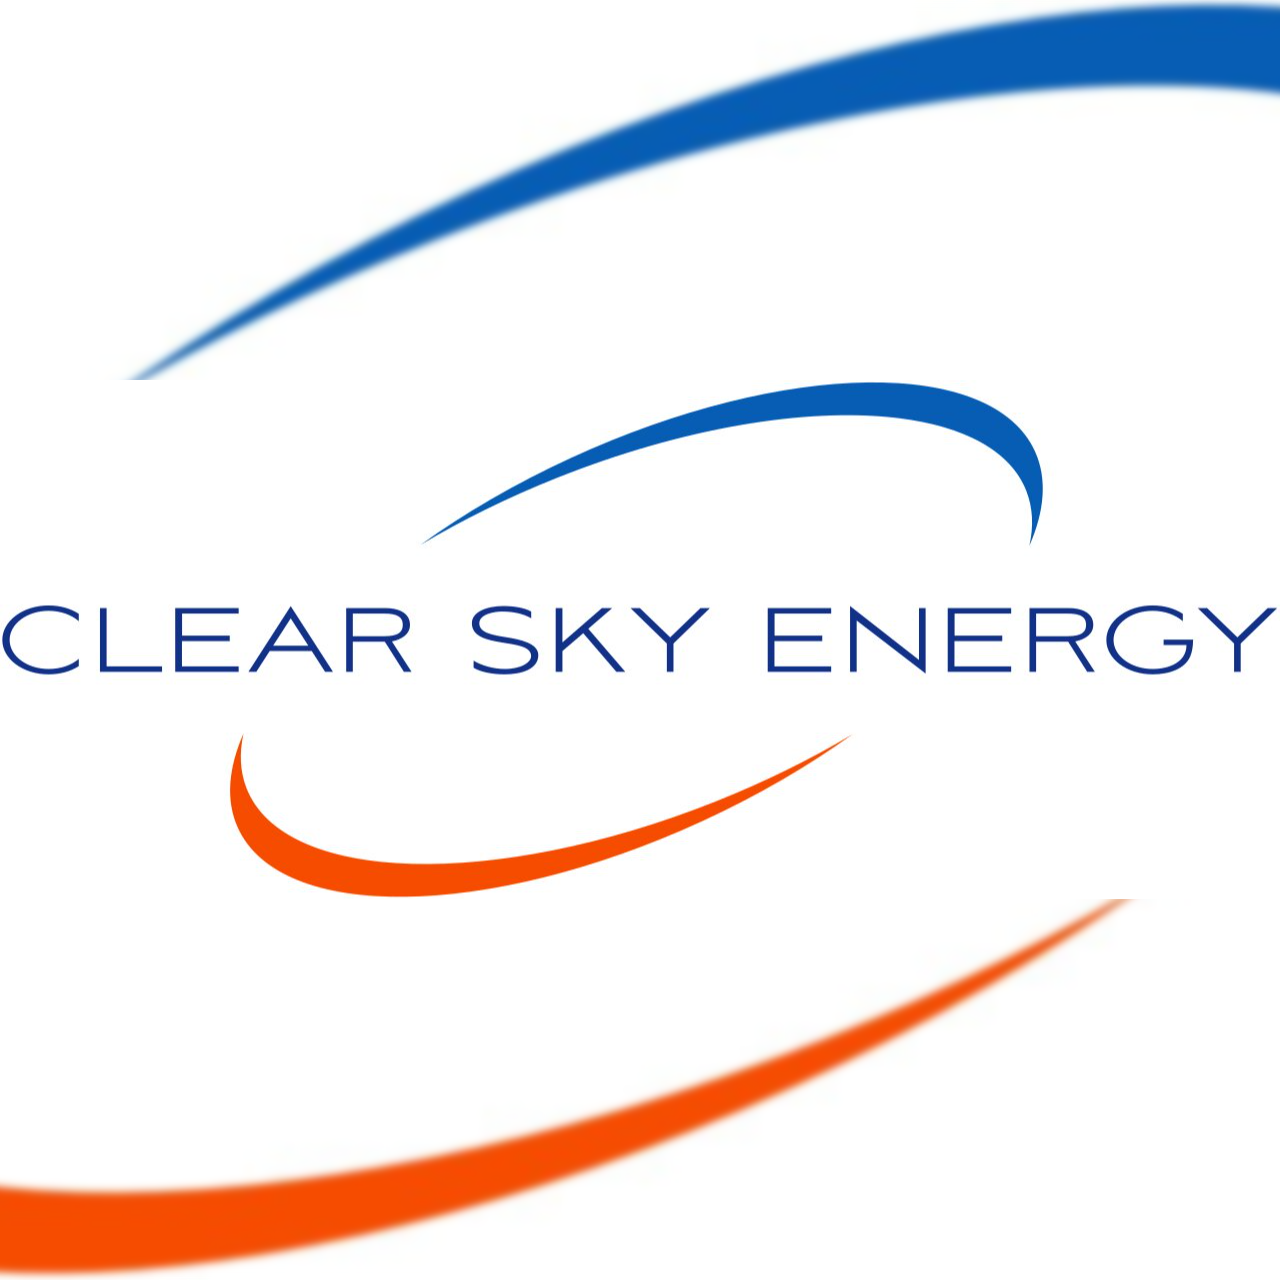  Clear Sky Energy